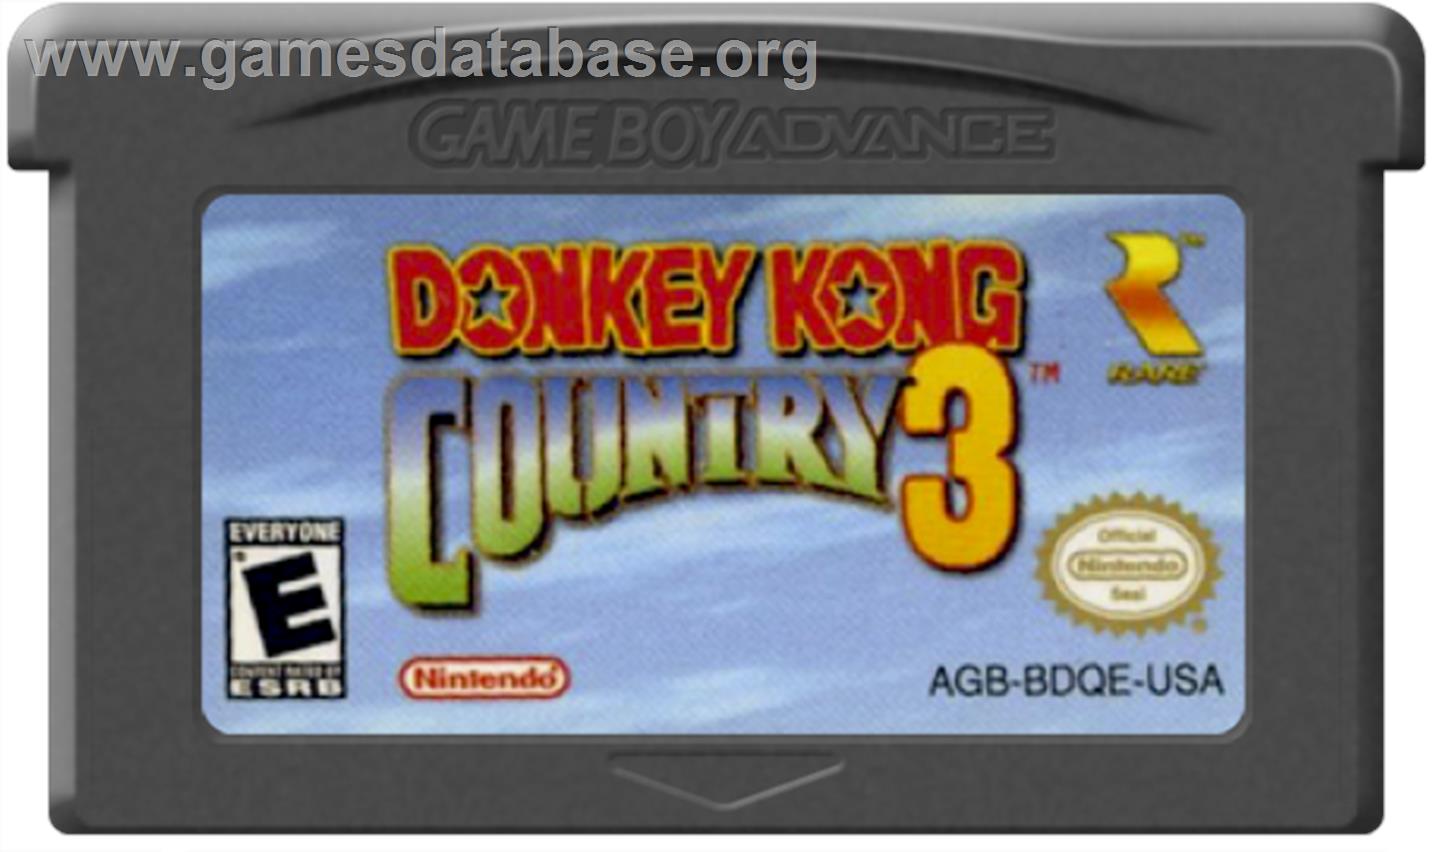 Donkey Kong 3 - Nintendo Game Boy Advance - Artwork - Cartridge